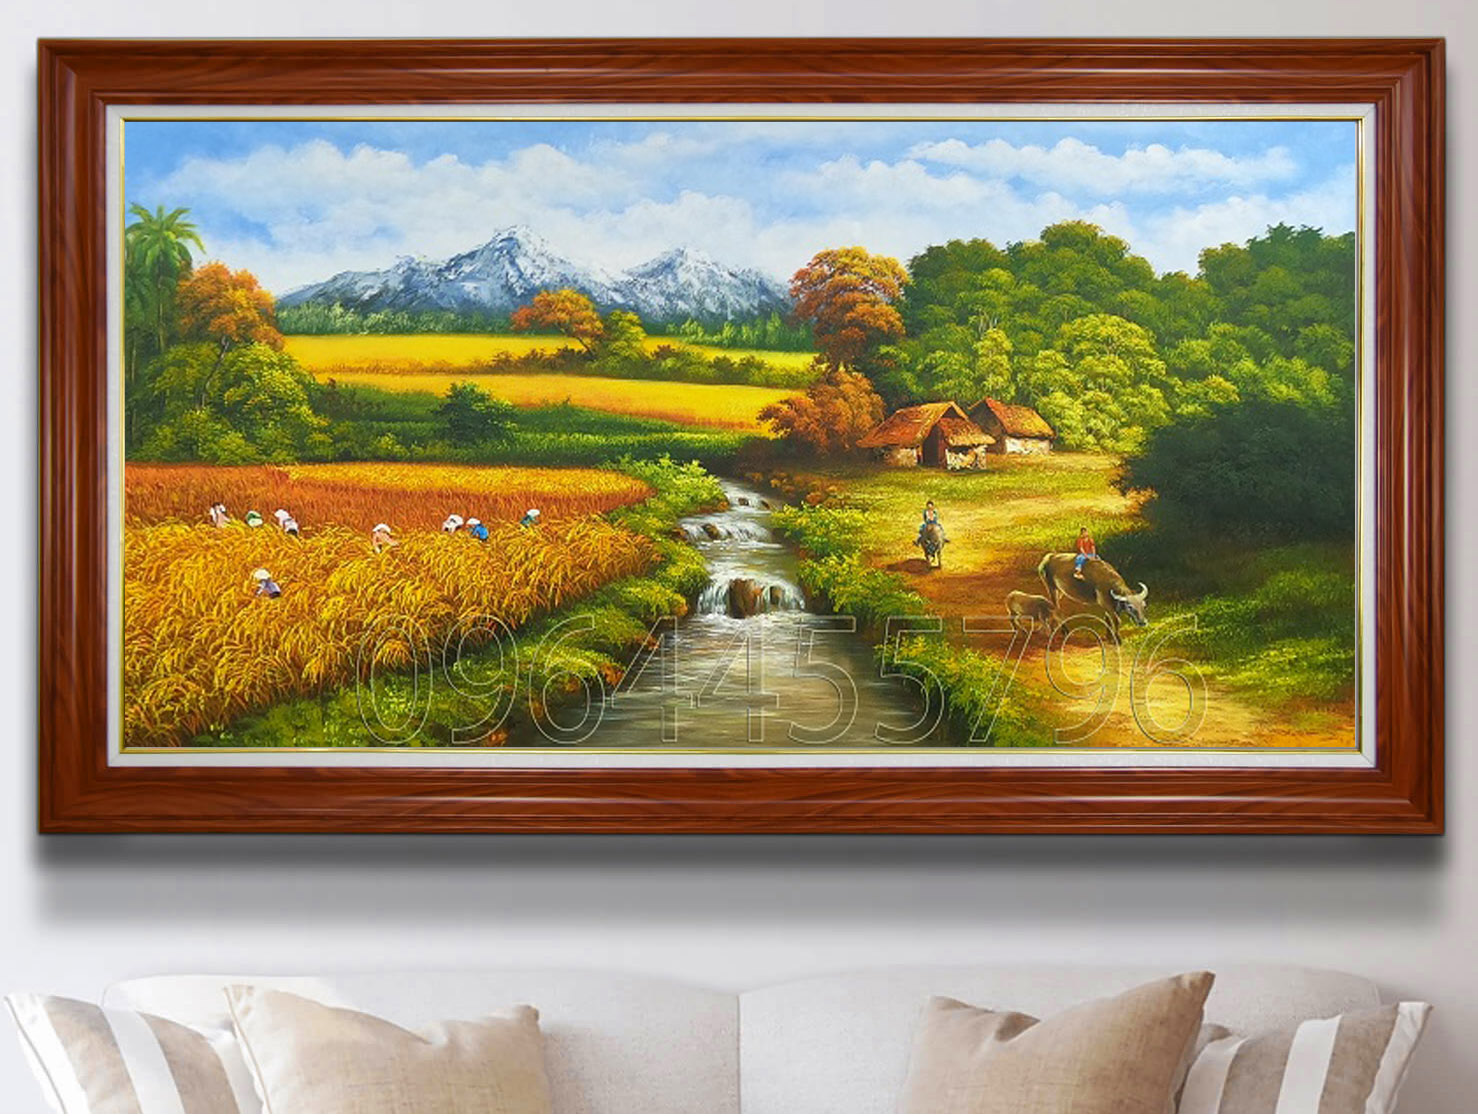 tranh treo tường phòng khách kt(97x177cm) 100% vẽ tay, giá theo kích thước  tùy chọn - Tranh Sơn Dầu Vẽ Tay - Tranh Sơn Mài - Tường Lam ART - 0964455796